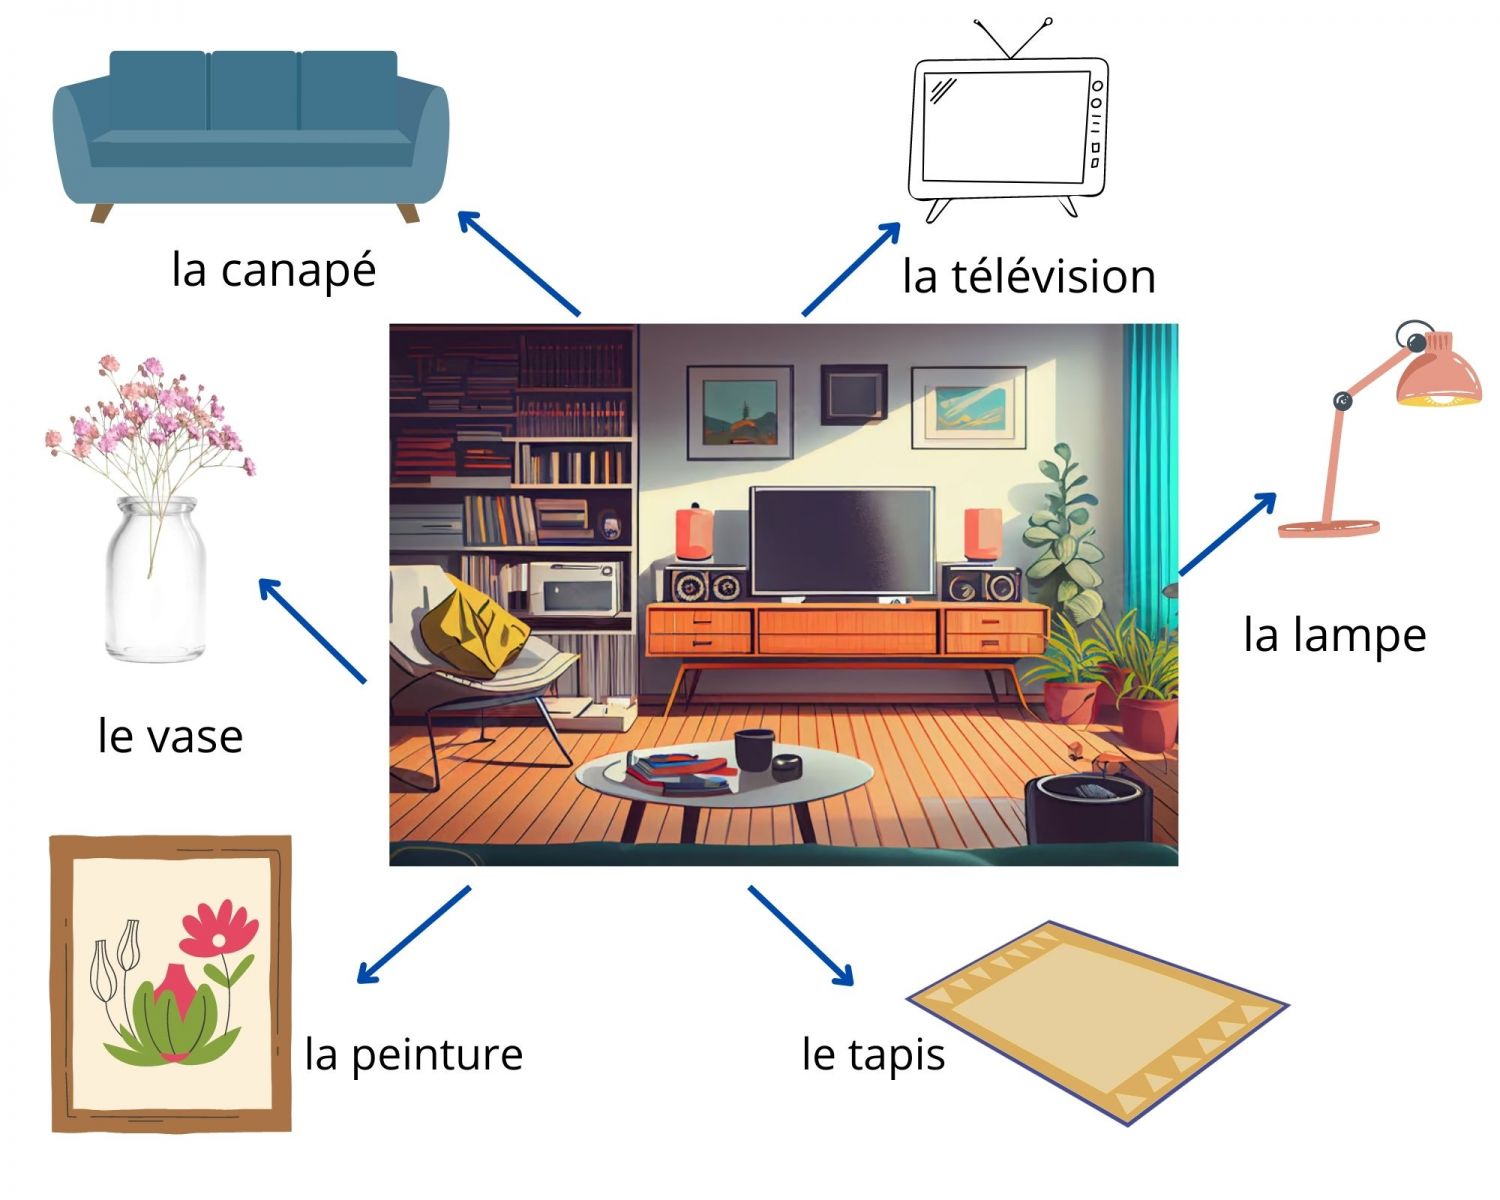 Tự học một số từ vựng tiếng Pháp chủ đề nhà cửa